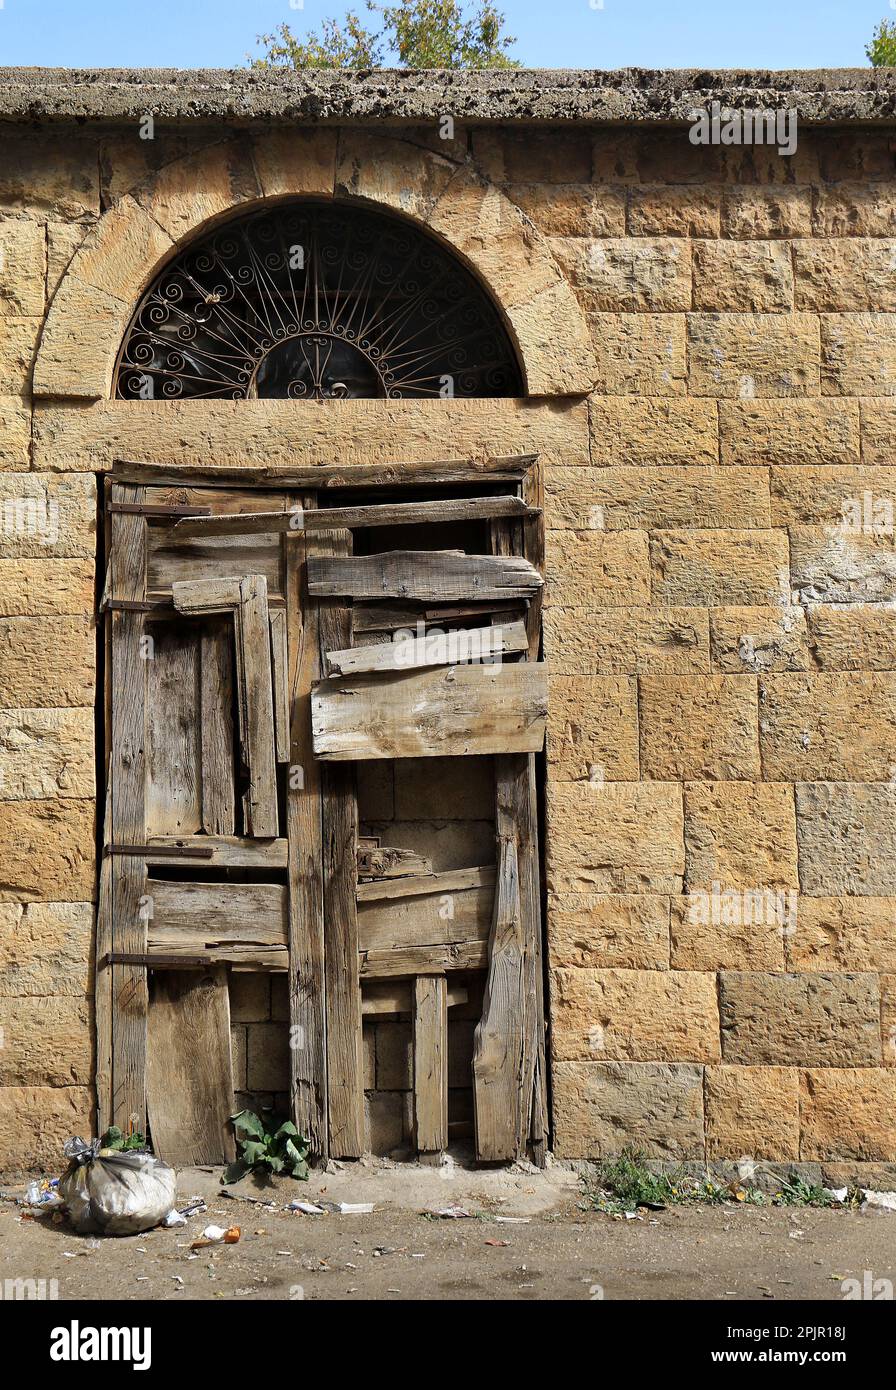 Una porta di legno chiusa con molte lastre con un arco sopra, tipici dettagli architettonici libanesi. Foto Stock